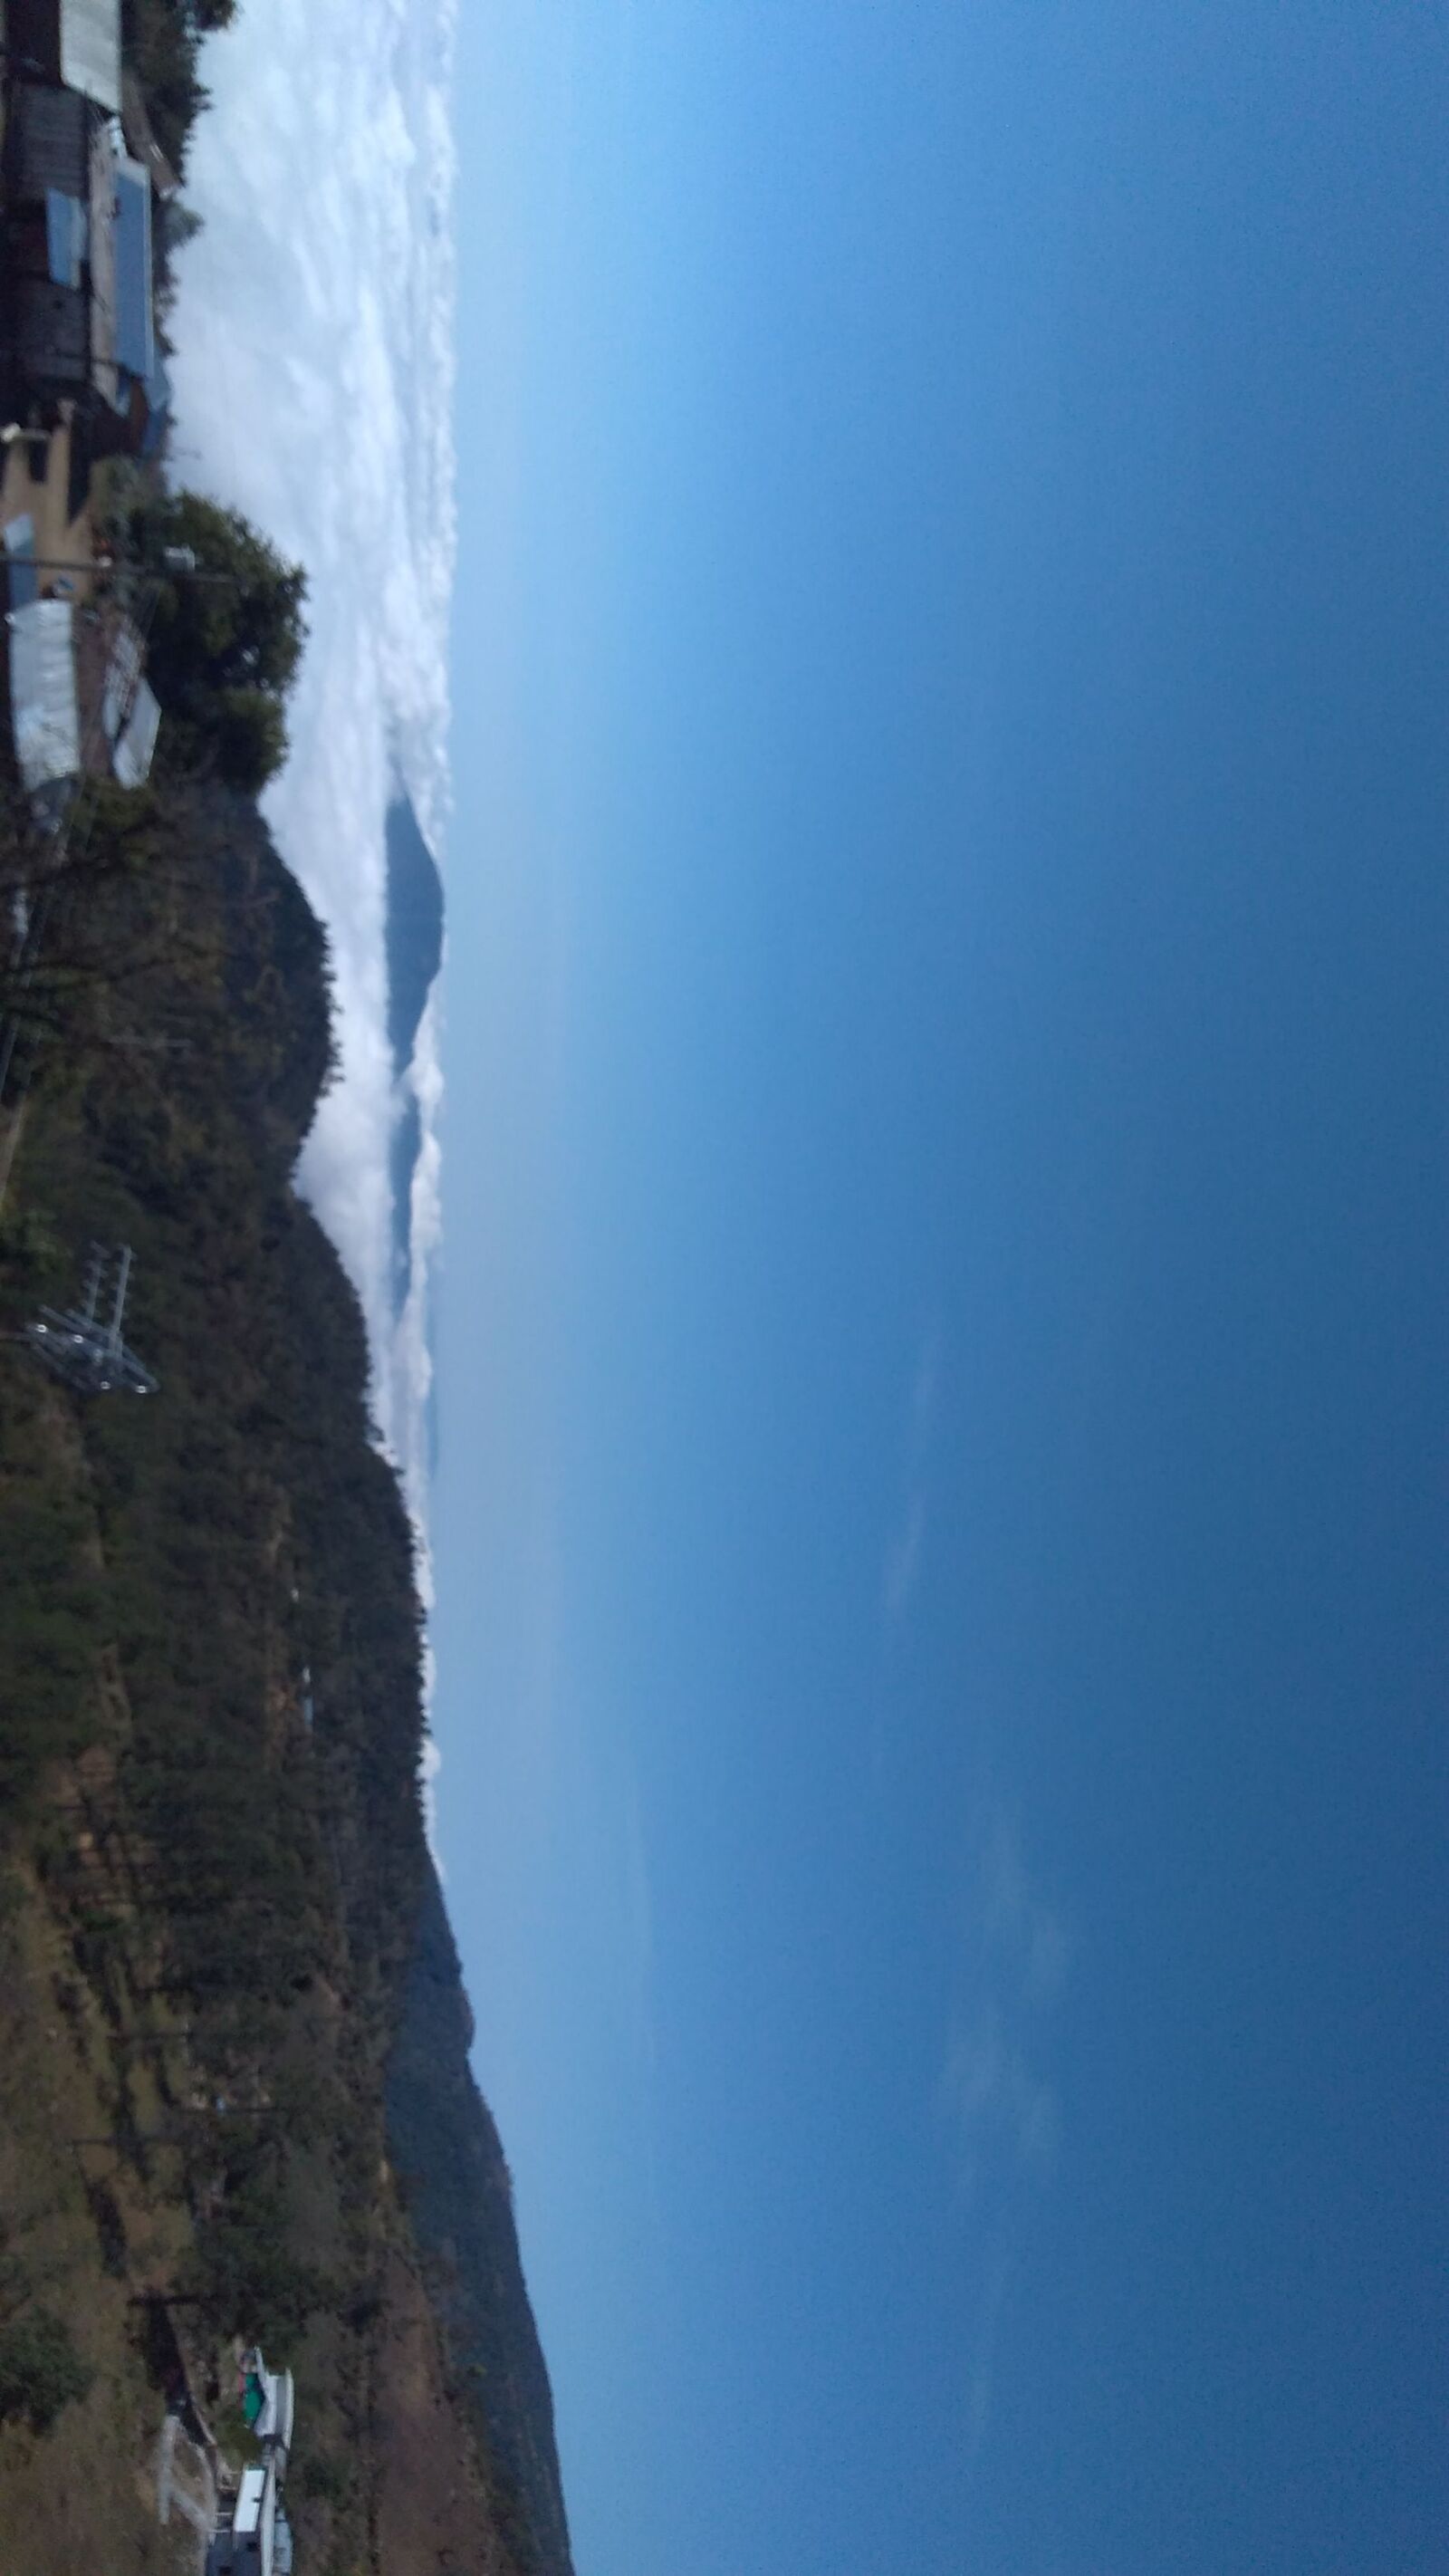 Motorola Moto G Play sample photo. Cielo, nubes, montaña photography